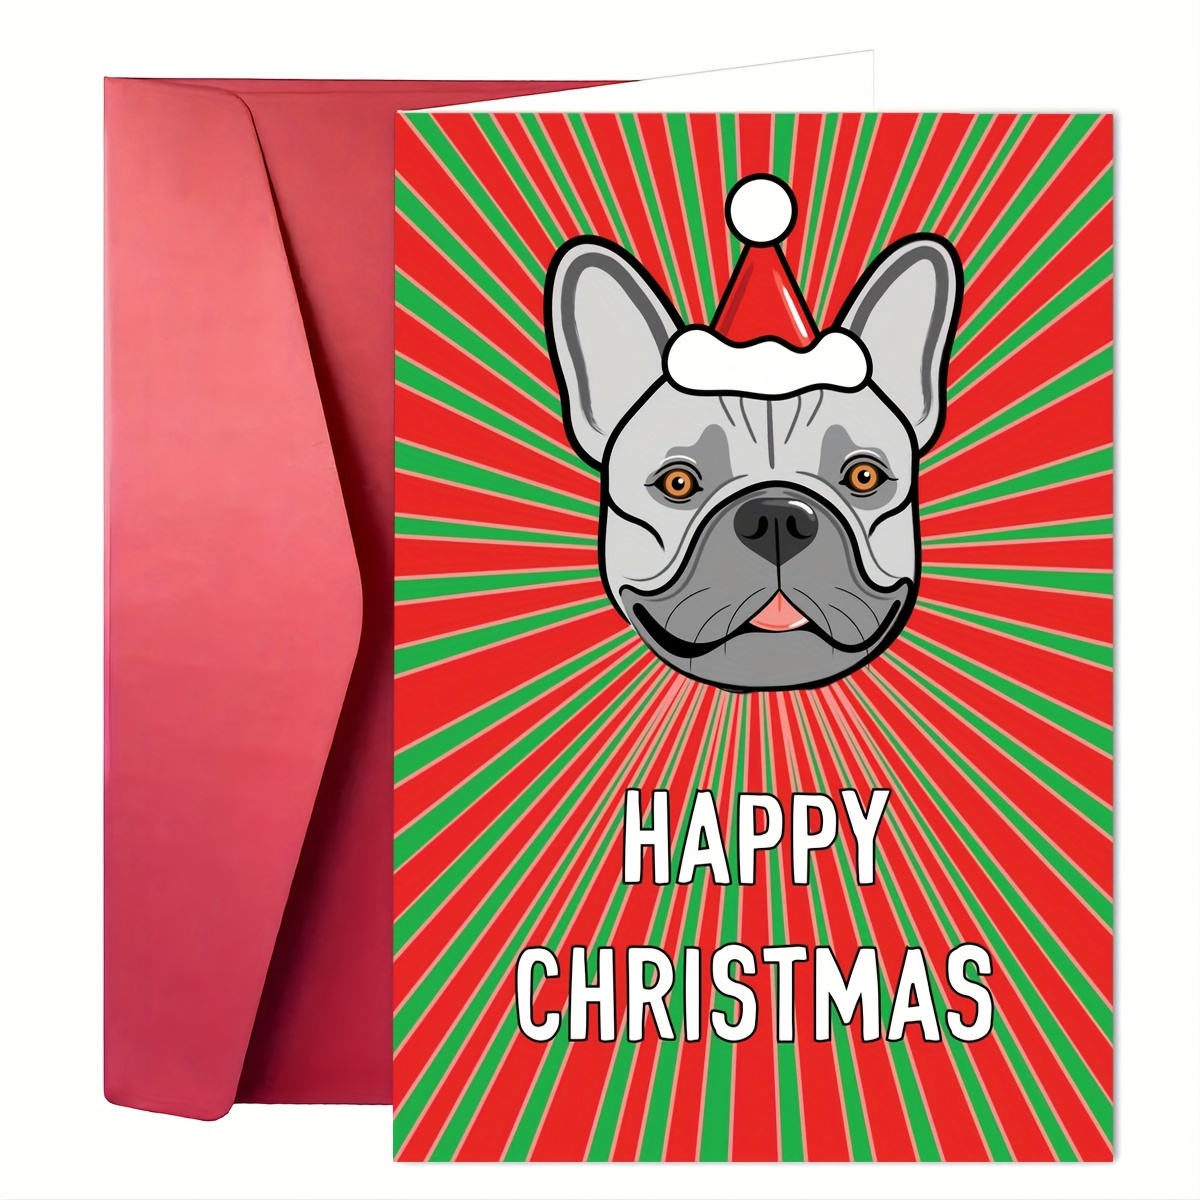 Bulldog E-Gift Card